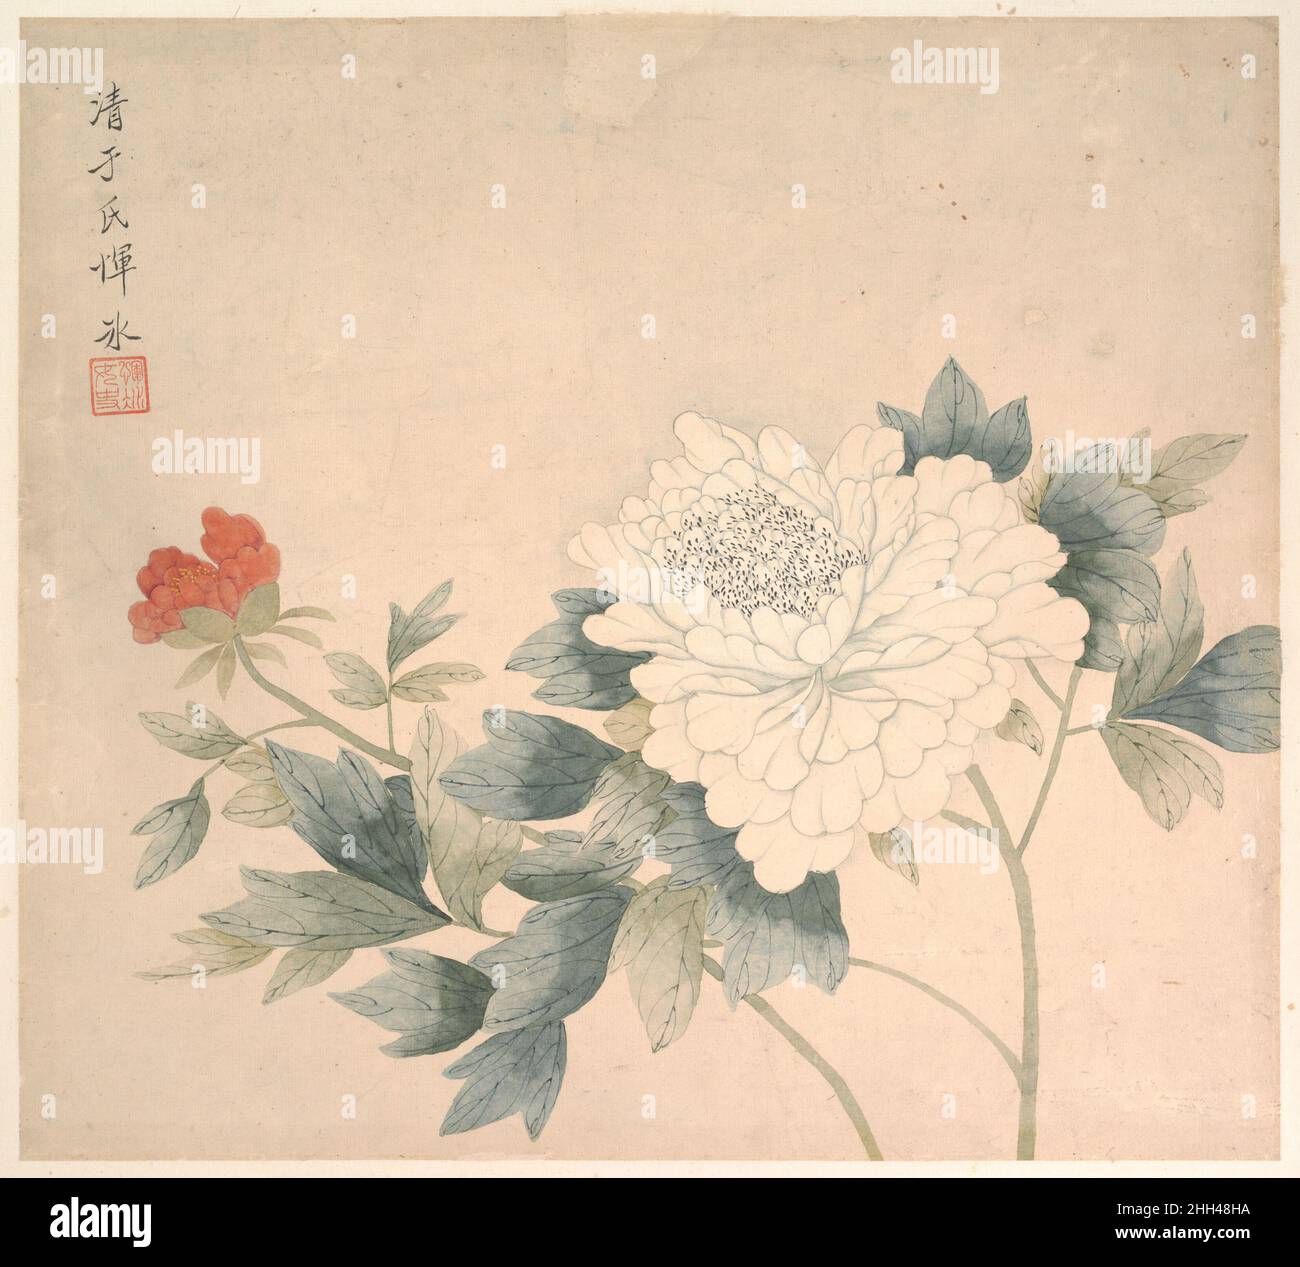 Pinturas chinas del siglo xvii fotografías e imágenes de alta resolución -  Alamy